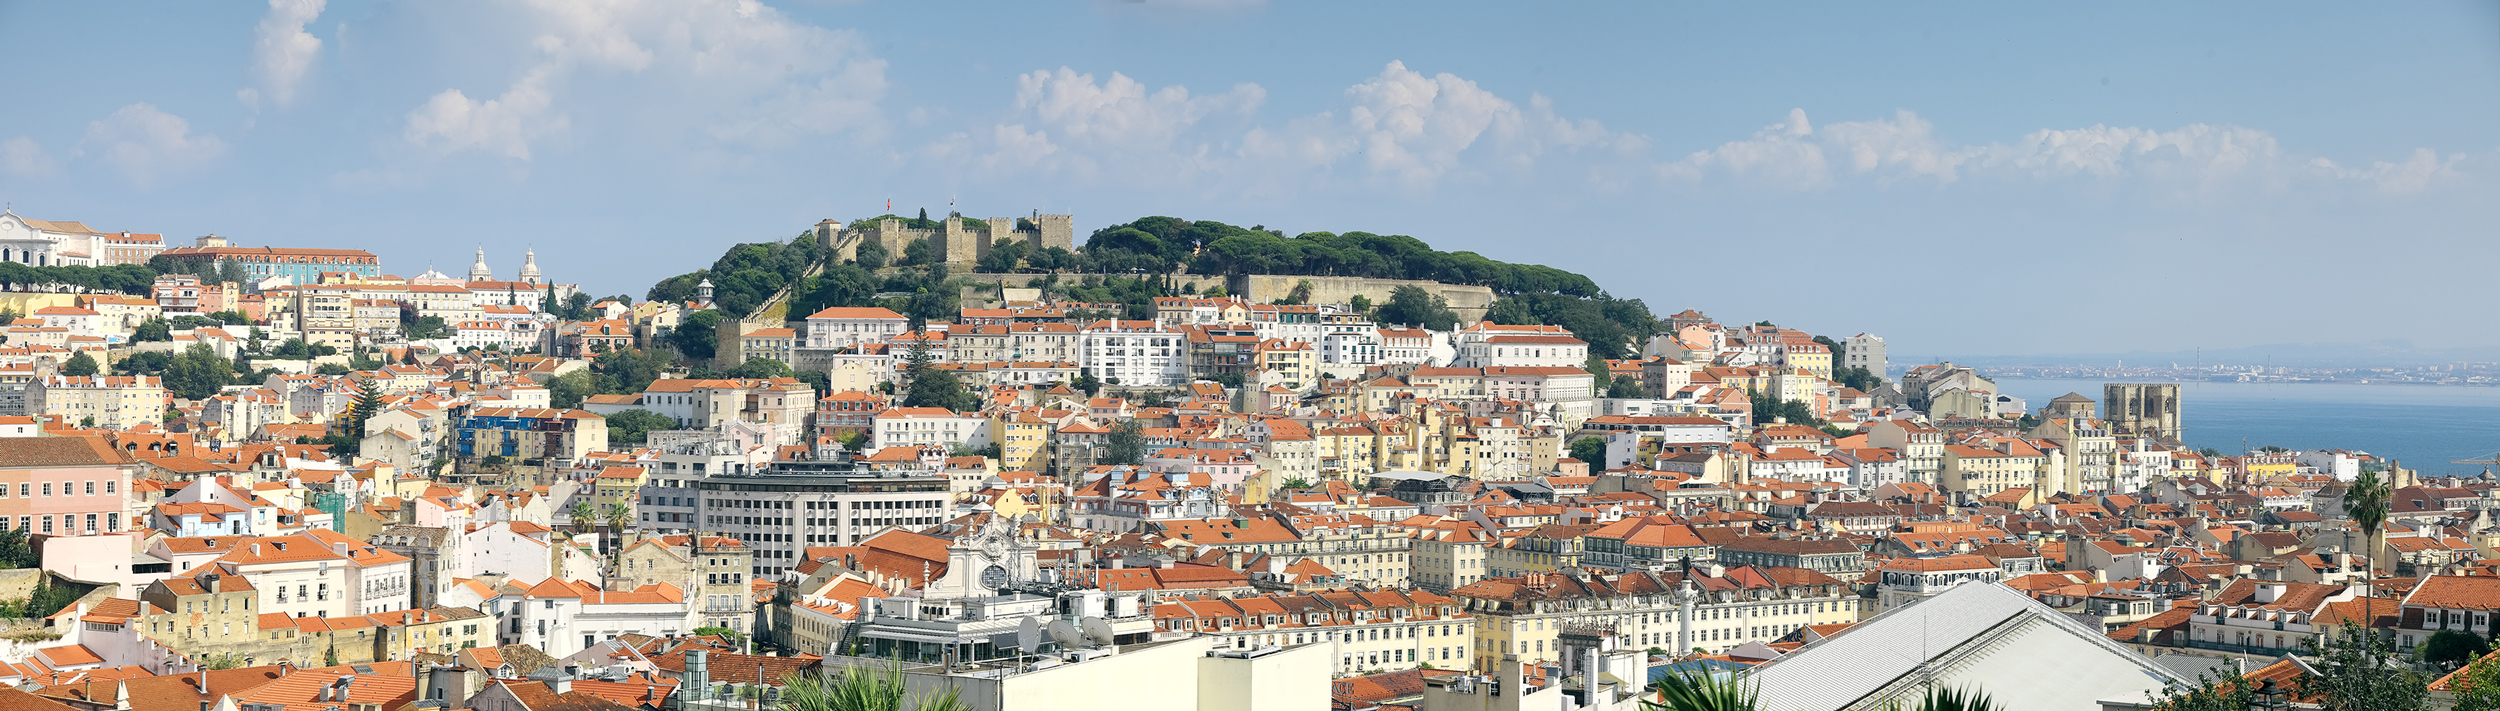 Lisboa - Vue sur le château de São Jorge  | © Turismo de Lisboa |